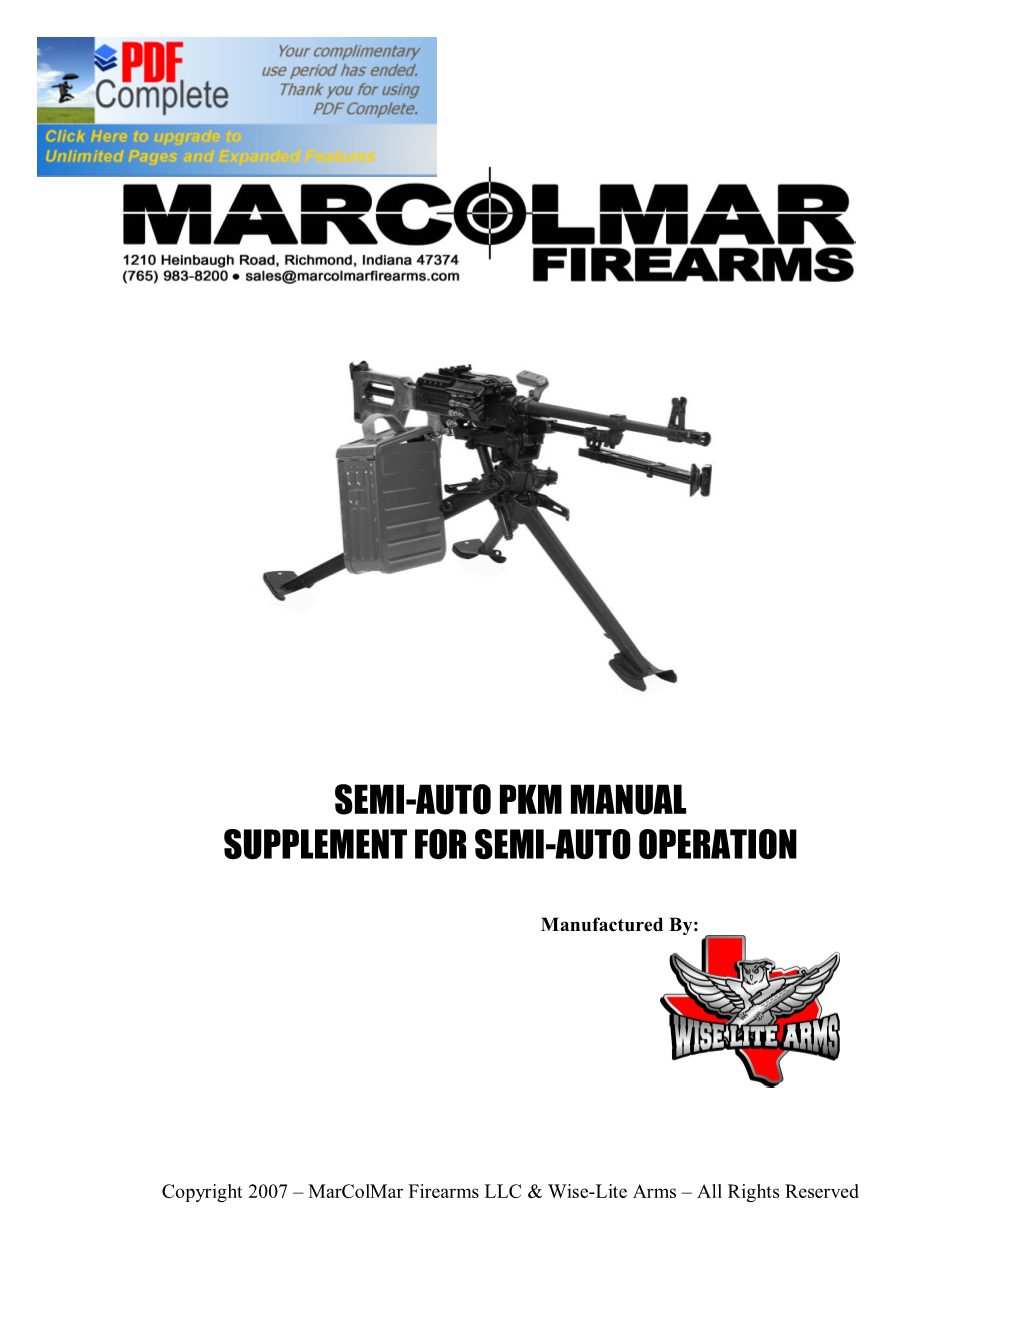 Semi-Auto Pkm Manual Supplement for Semi-Auto Operation